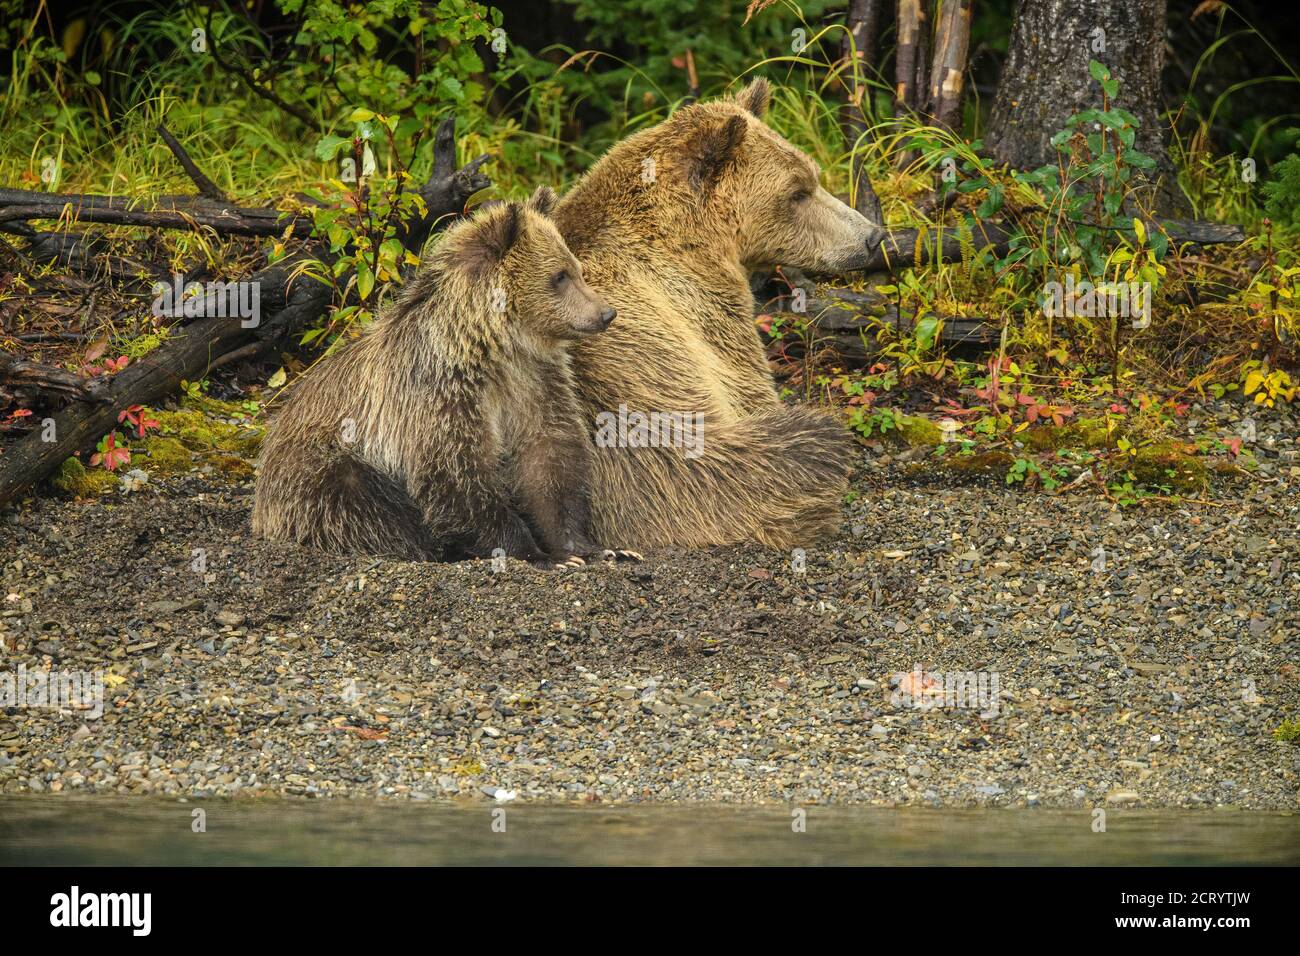 Ours grizzli (Ursus arctos) des femelles et des cub alertent une famille rivale le long d'une rivière à saumon, Chilcotin Wilderness, BC Interior, Canada Banque D'Images